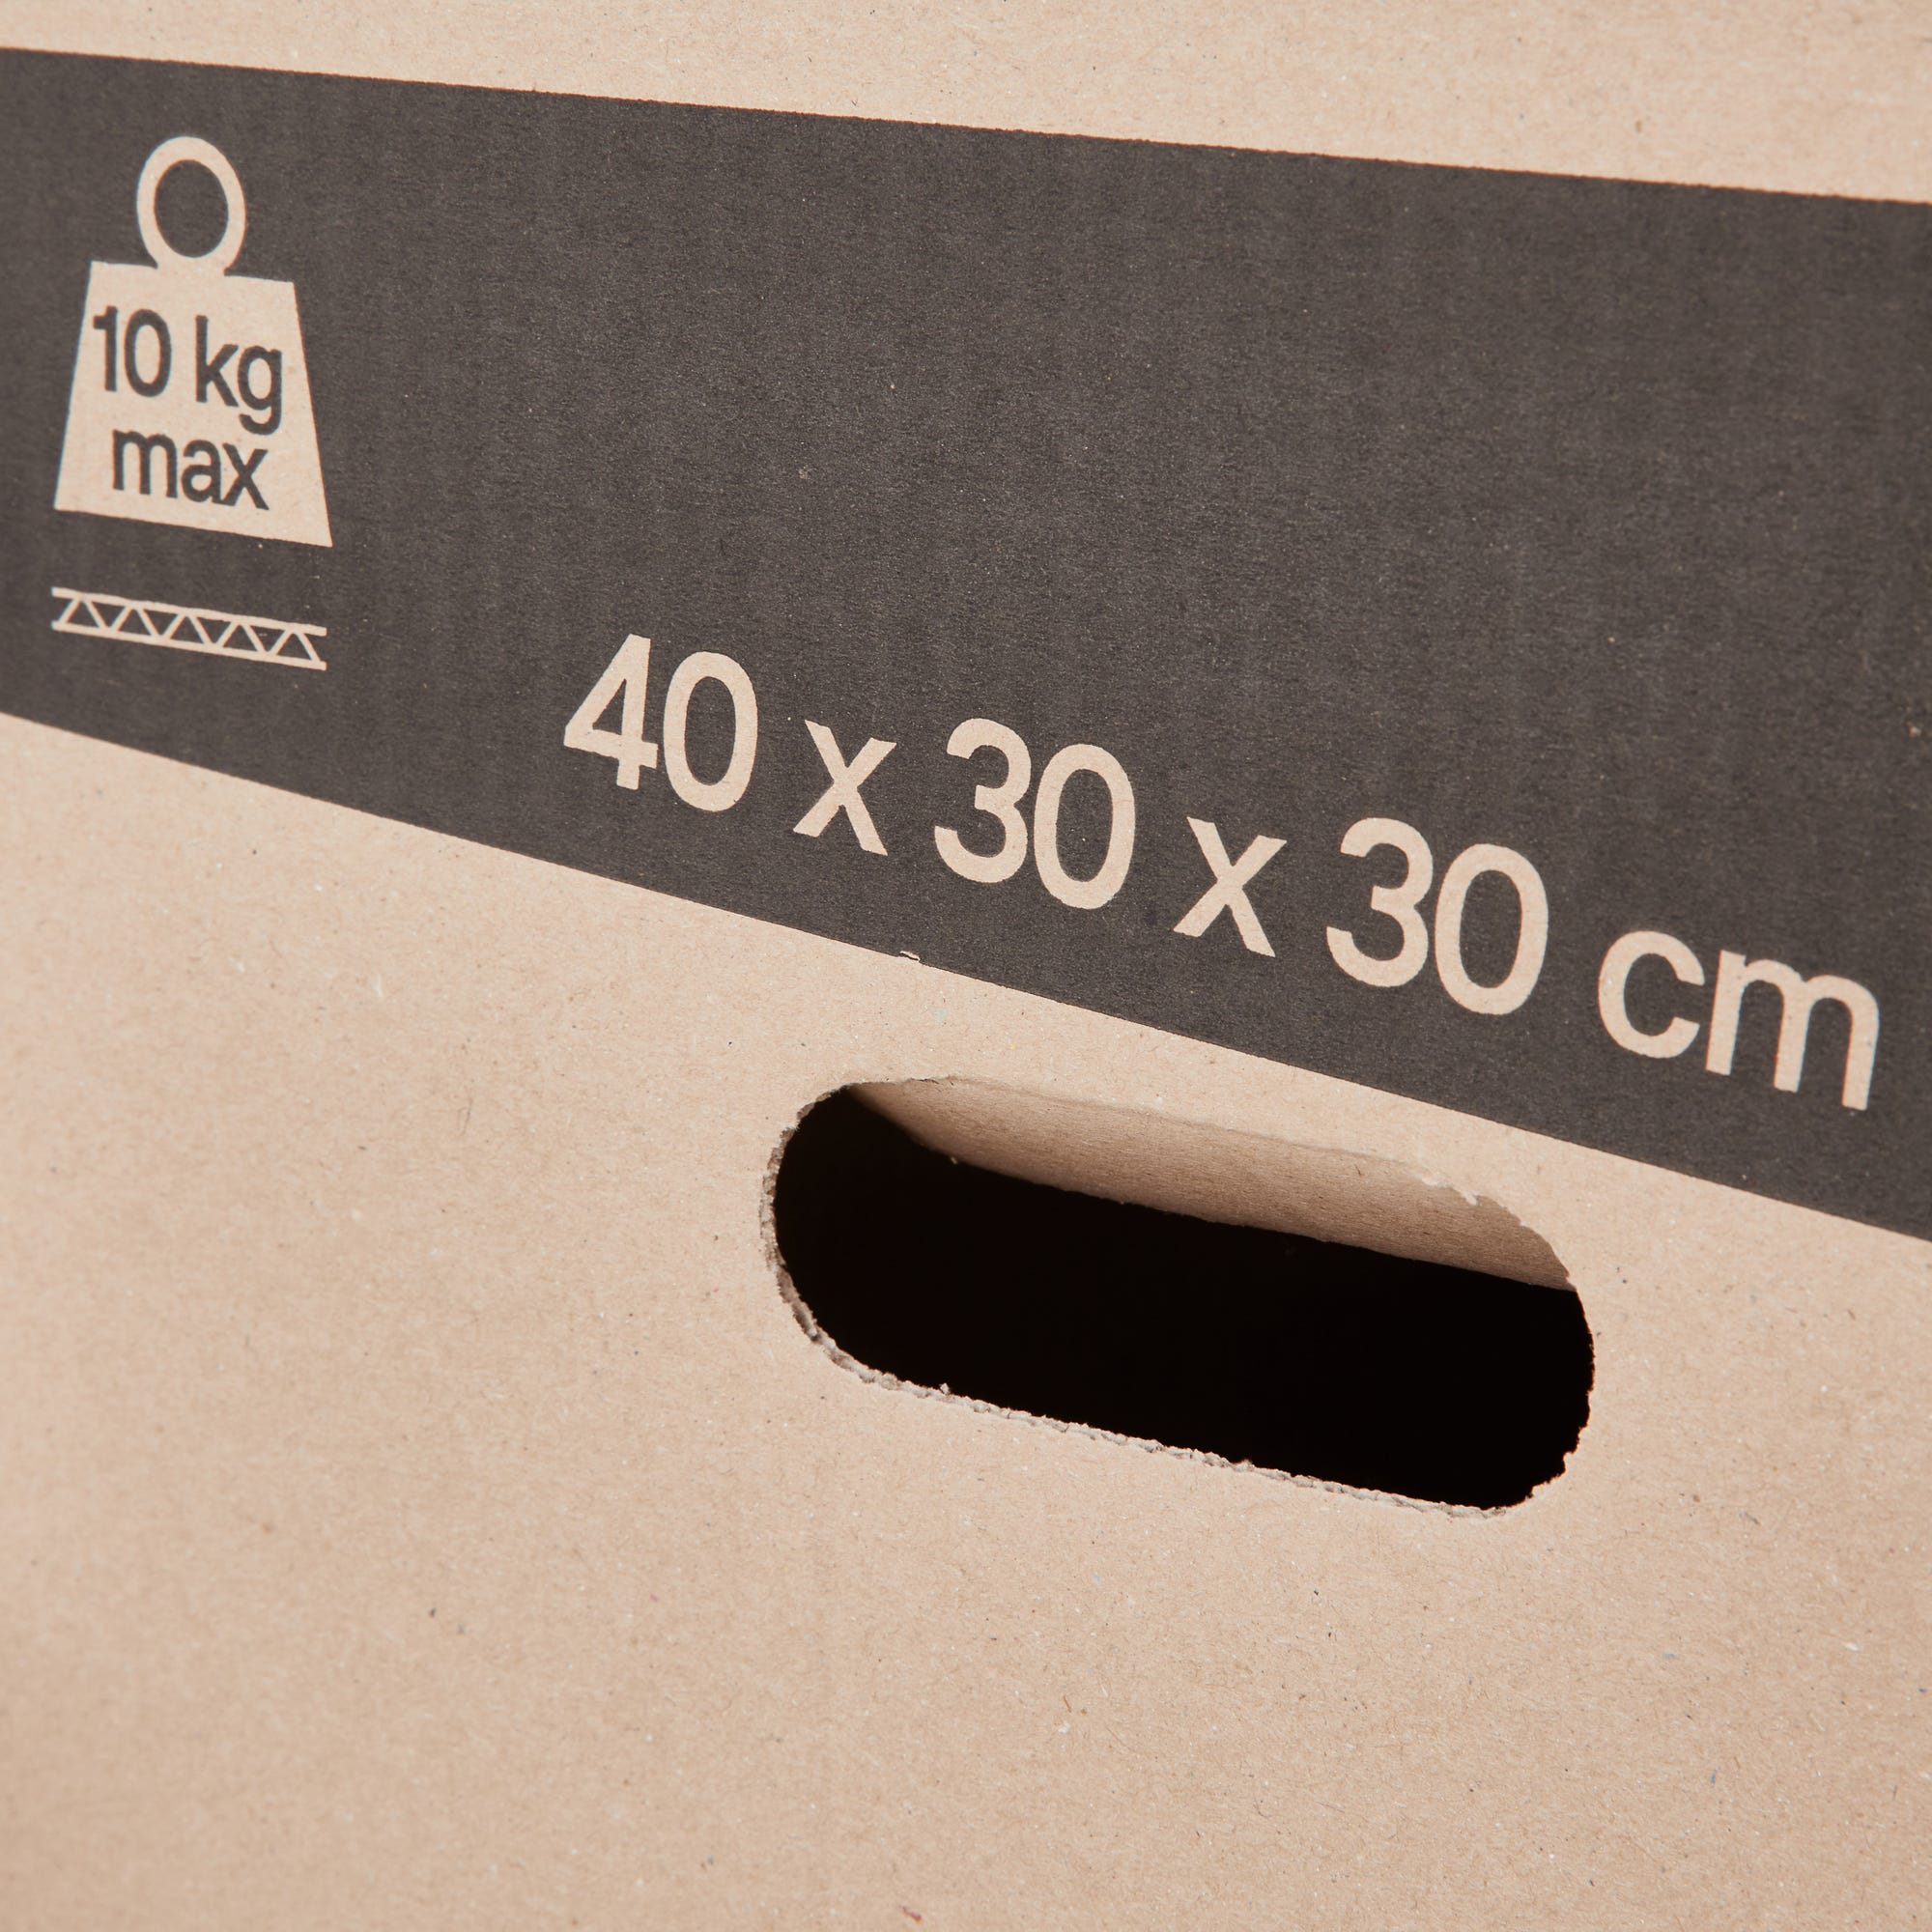 Lot de 60 cartons de déménagement standards avec poignées - 36L, charge max 10kg - made in France + 3 adhésifs offerts 4